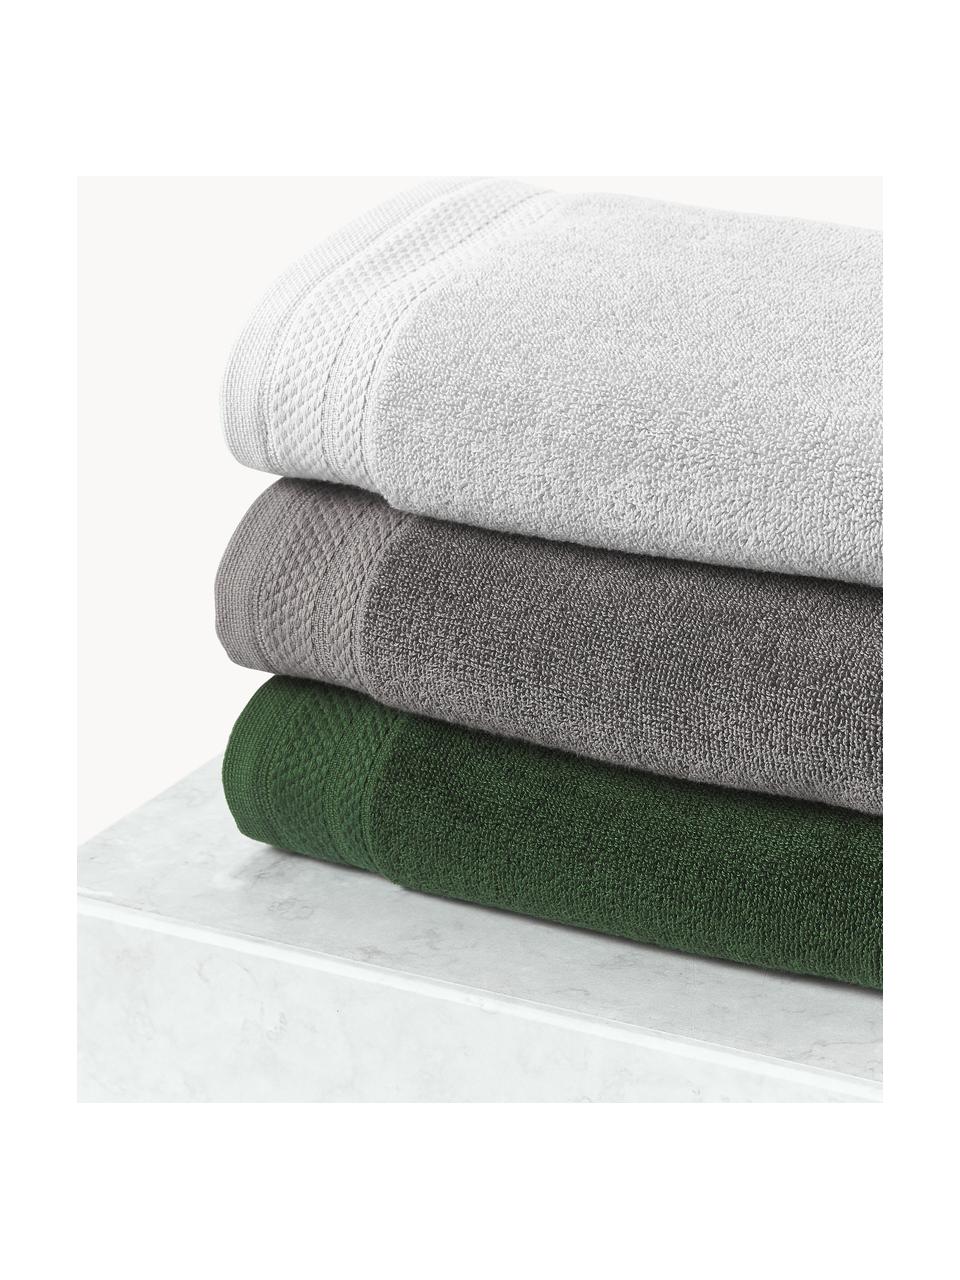 Lot de serviettes de bain en coton bio Premium, tailles variées, Vert foncé, 6 éléments (2 serviettes invité, 2 serviettes de toilette et 2 draps de bain)